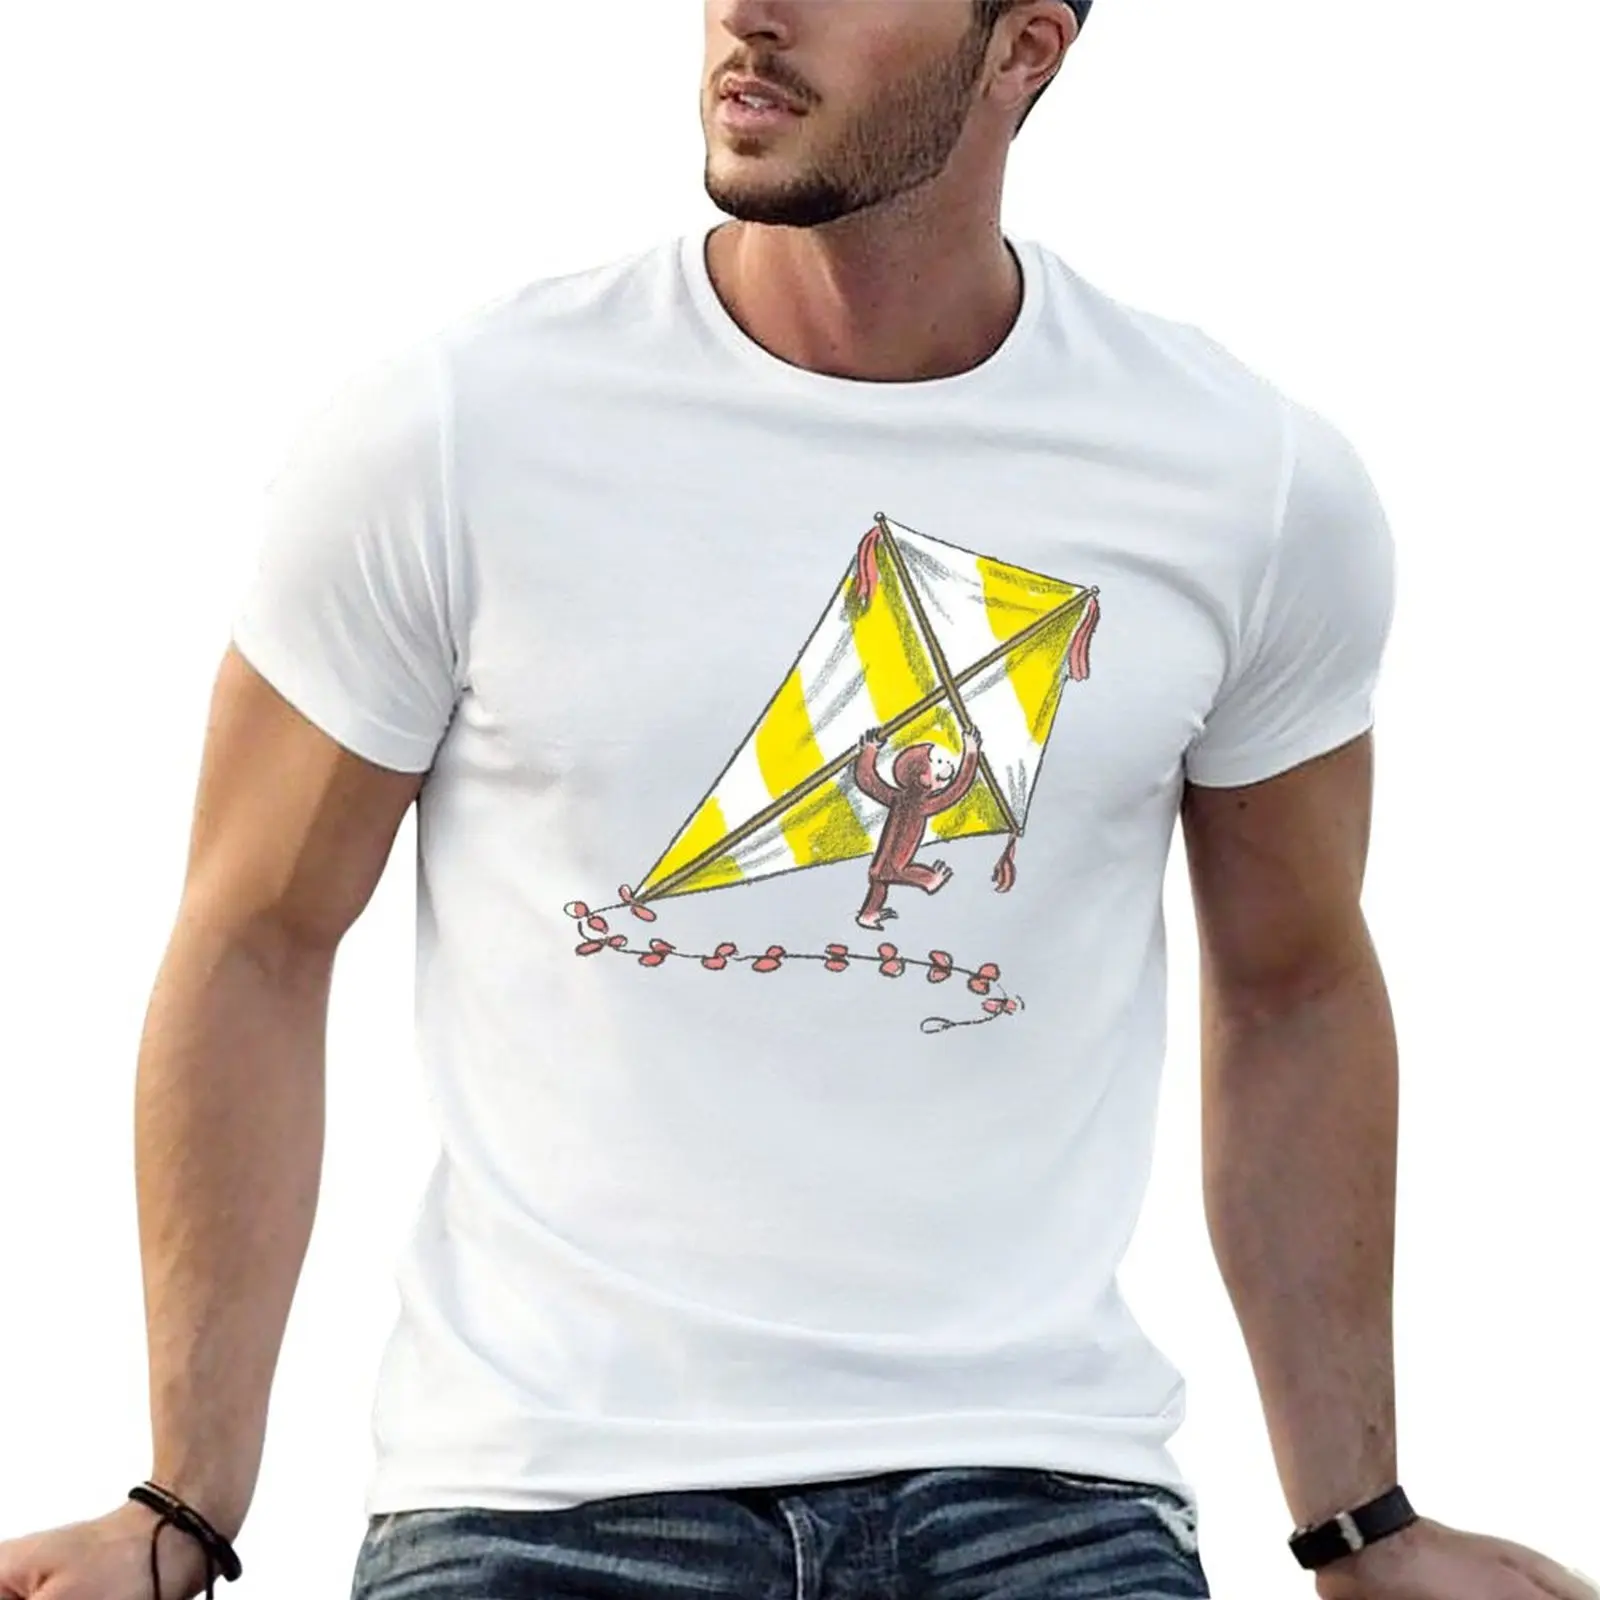 curioso george maglietta - Acquista curioso george maglietta con spedizione  gratuita su AliExpress version